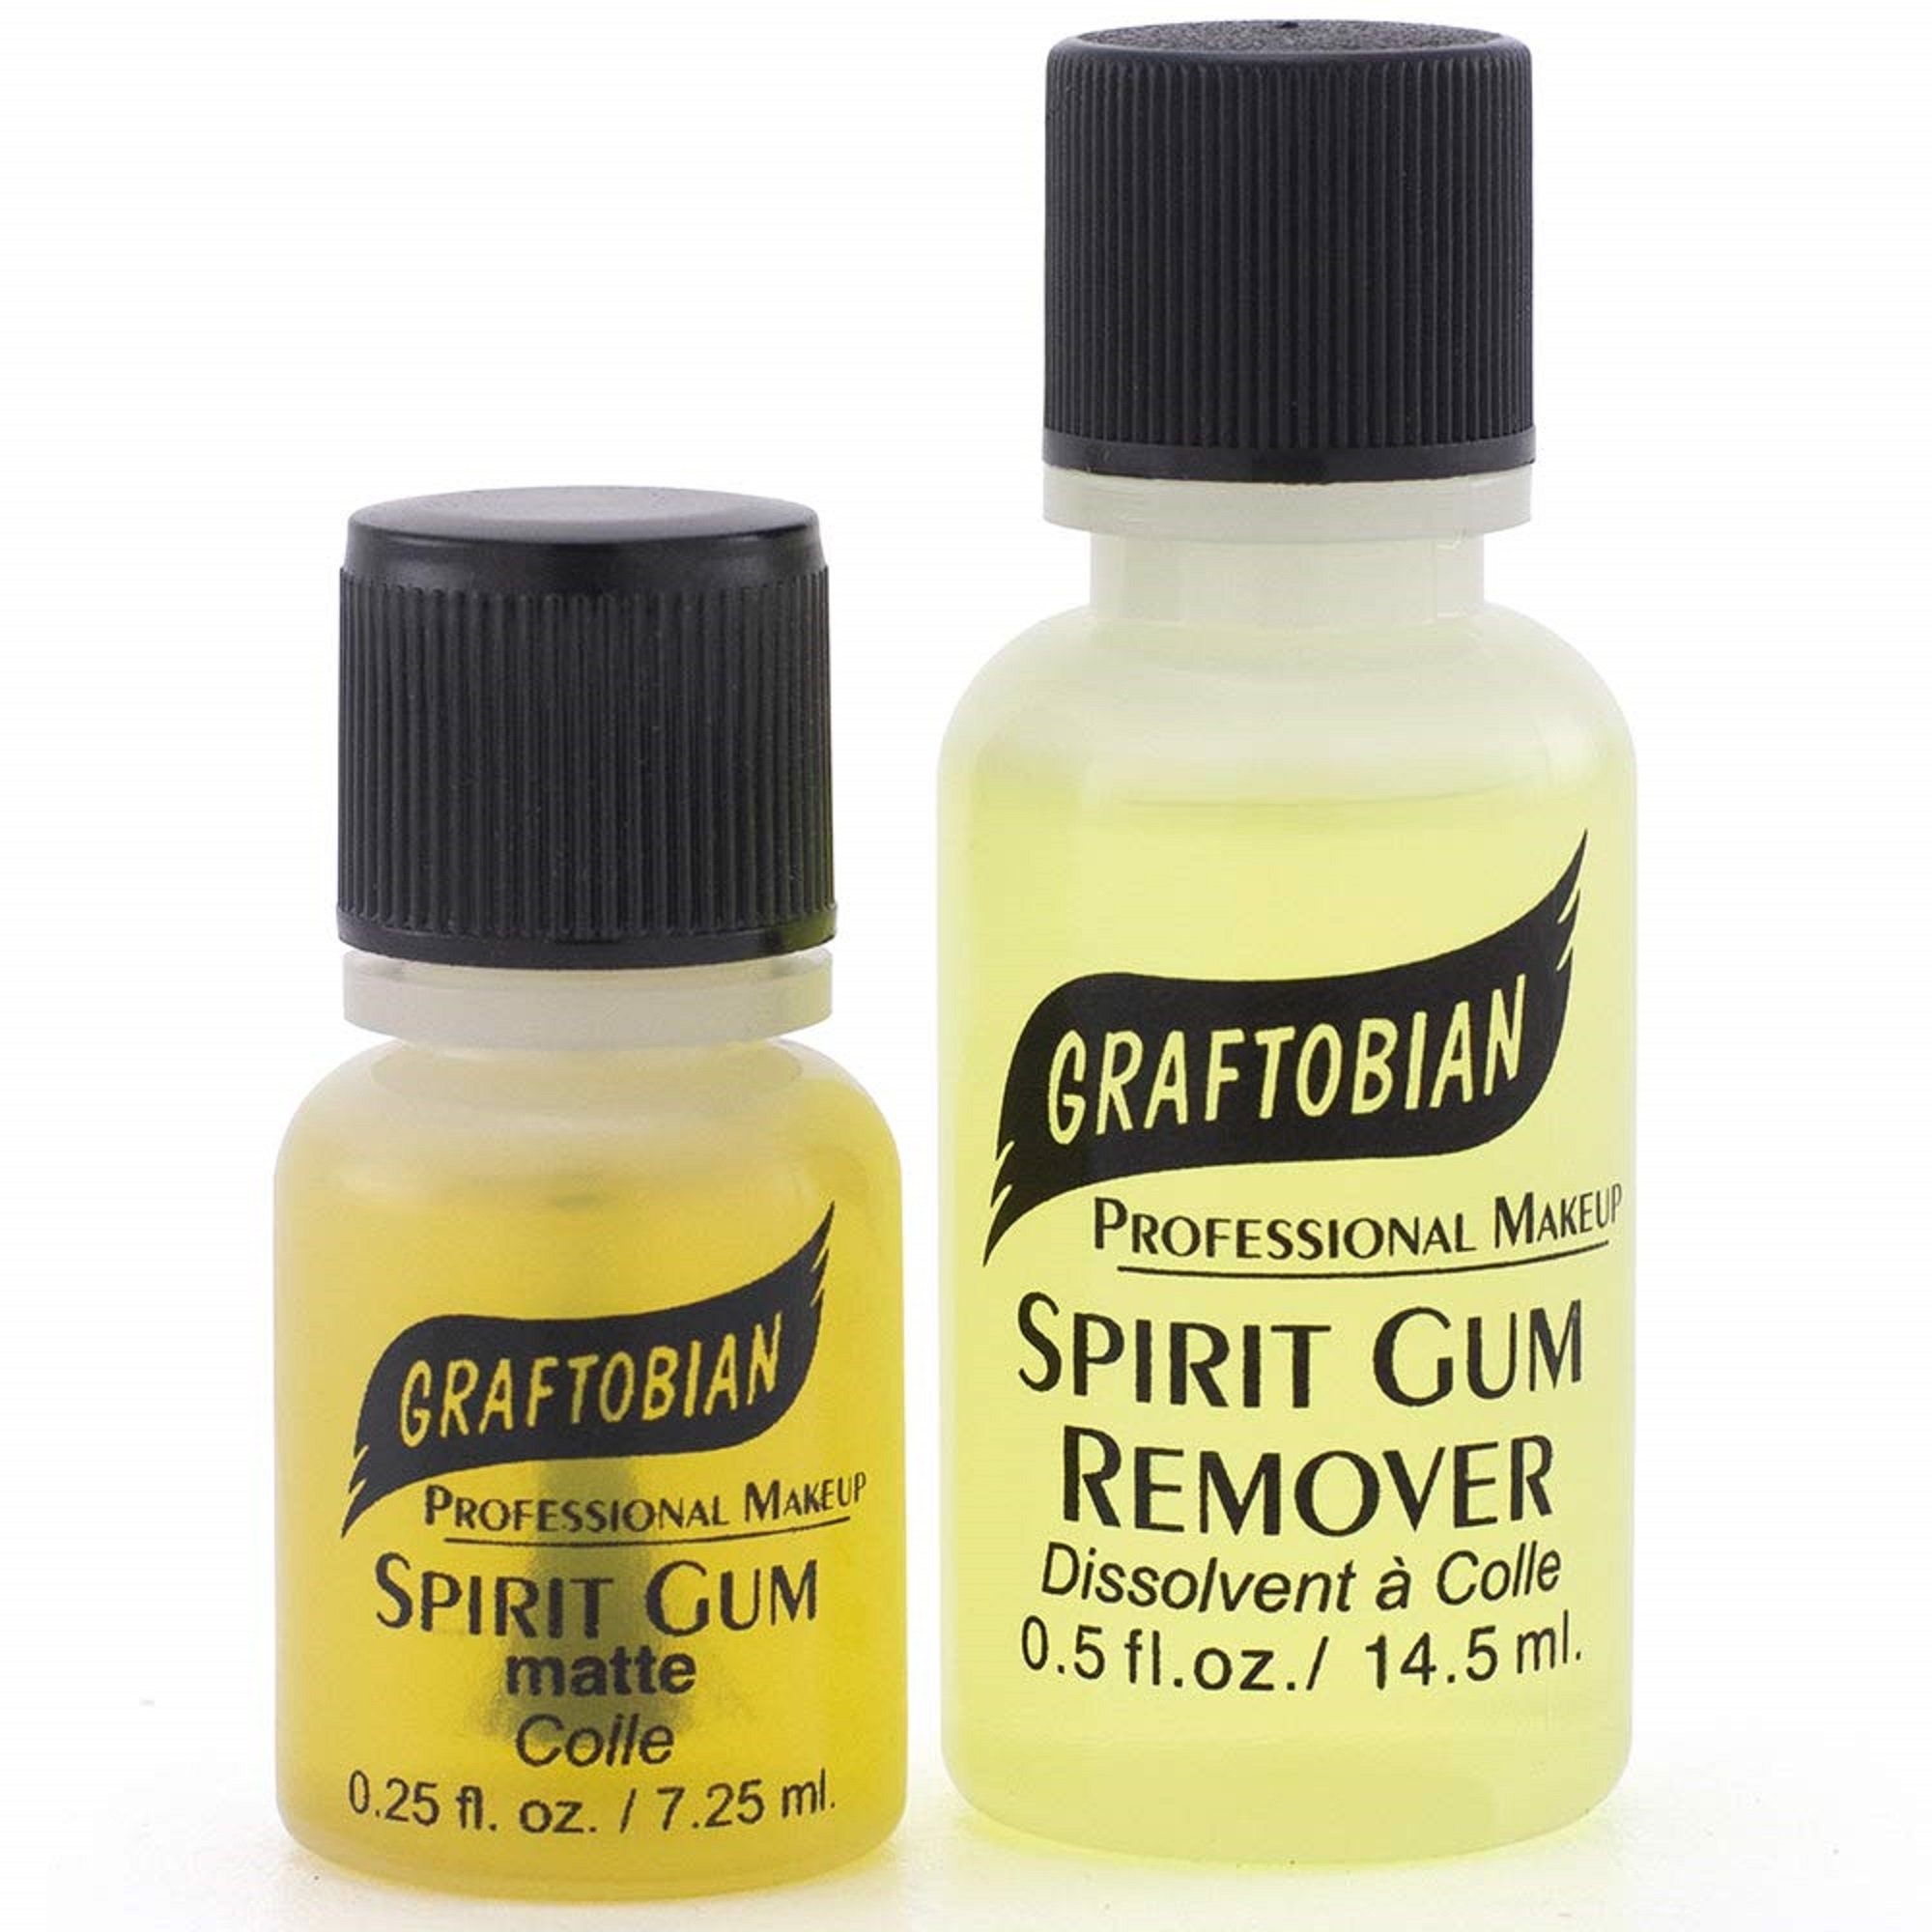 Kryolan Spirit Gum Remover & Thinner 